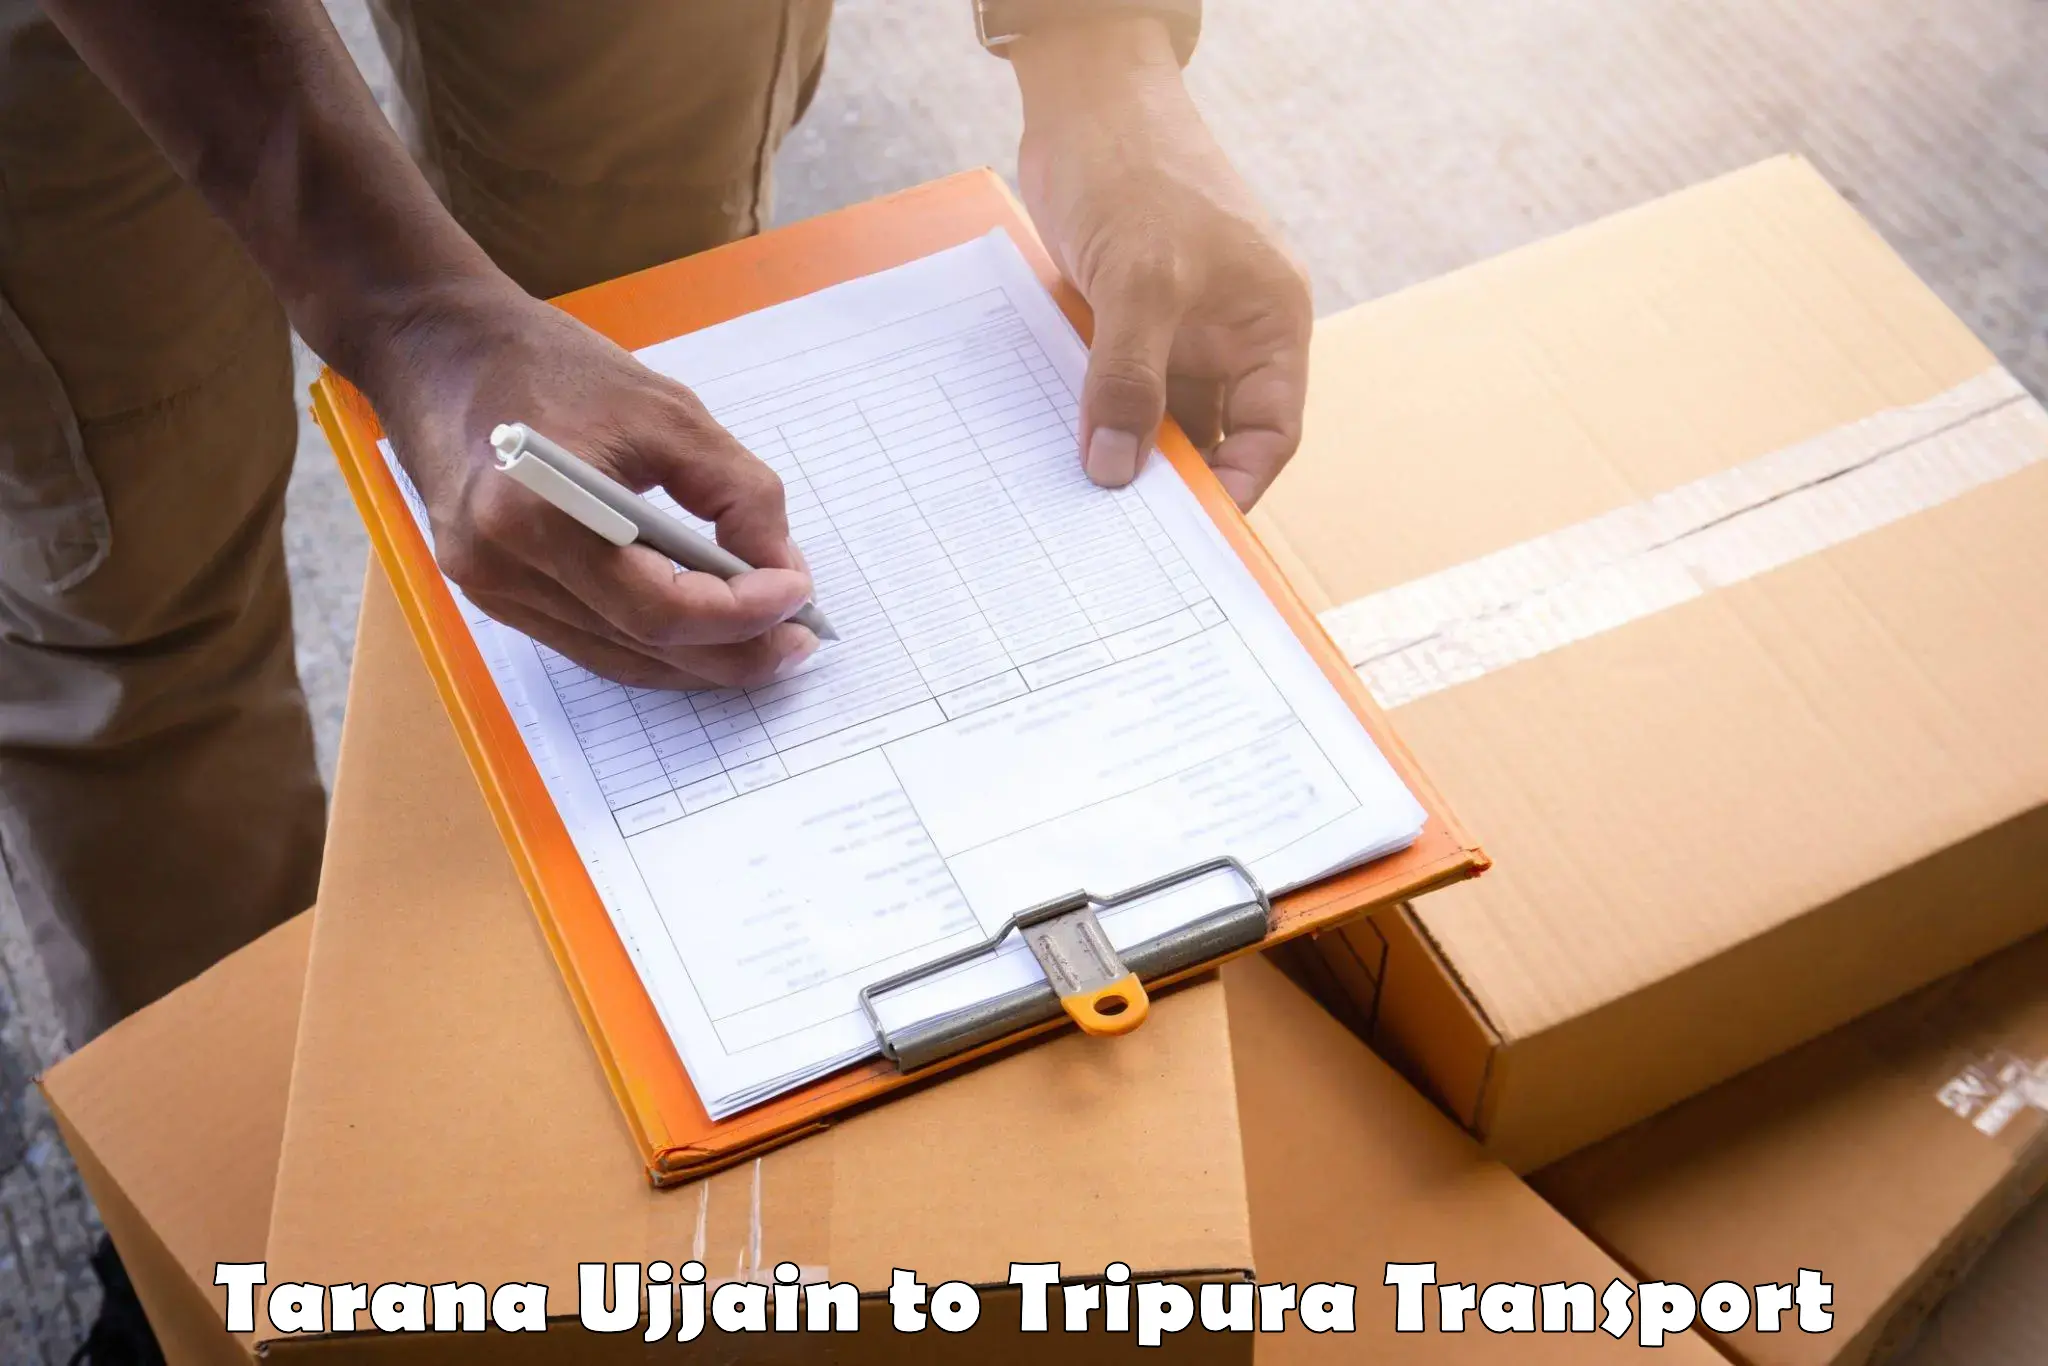 Bike transport service Tarana Ujjain to Udaipur Tripura